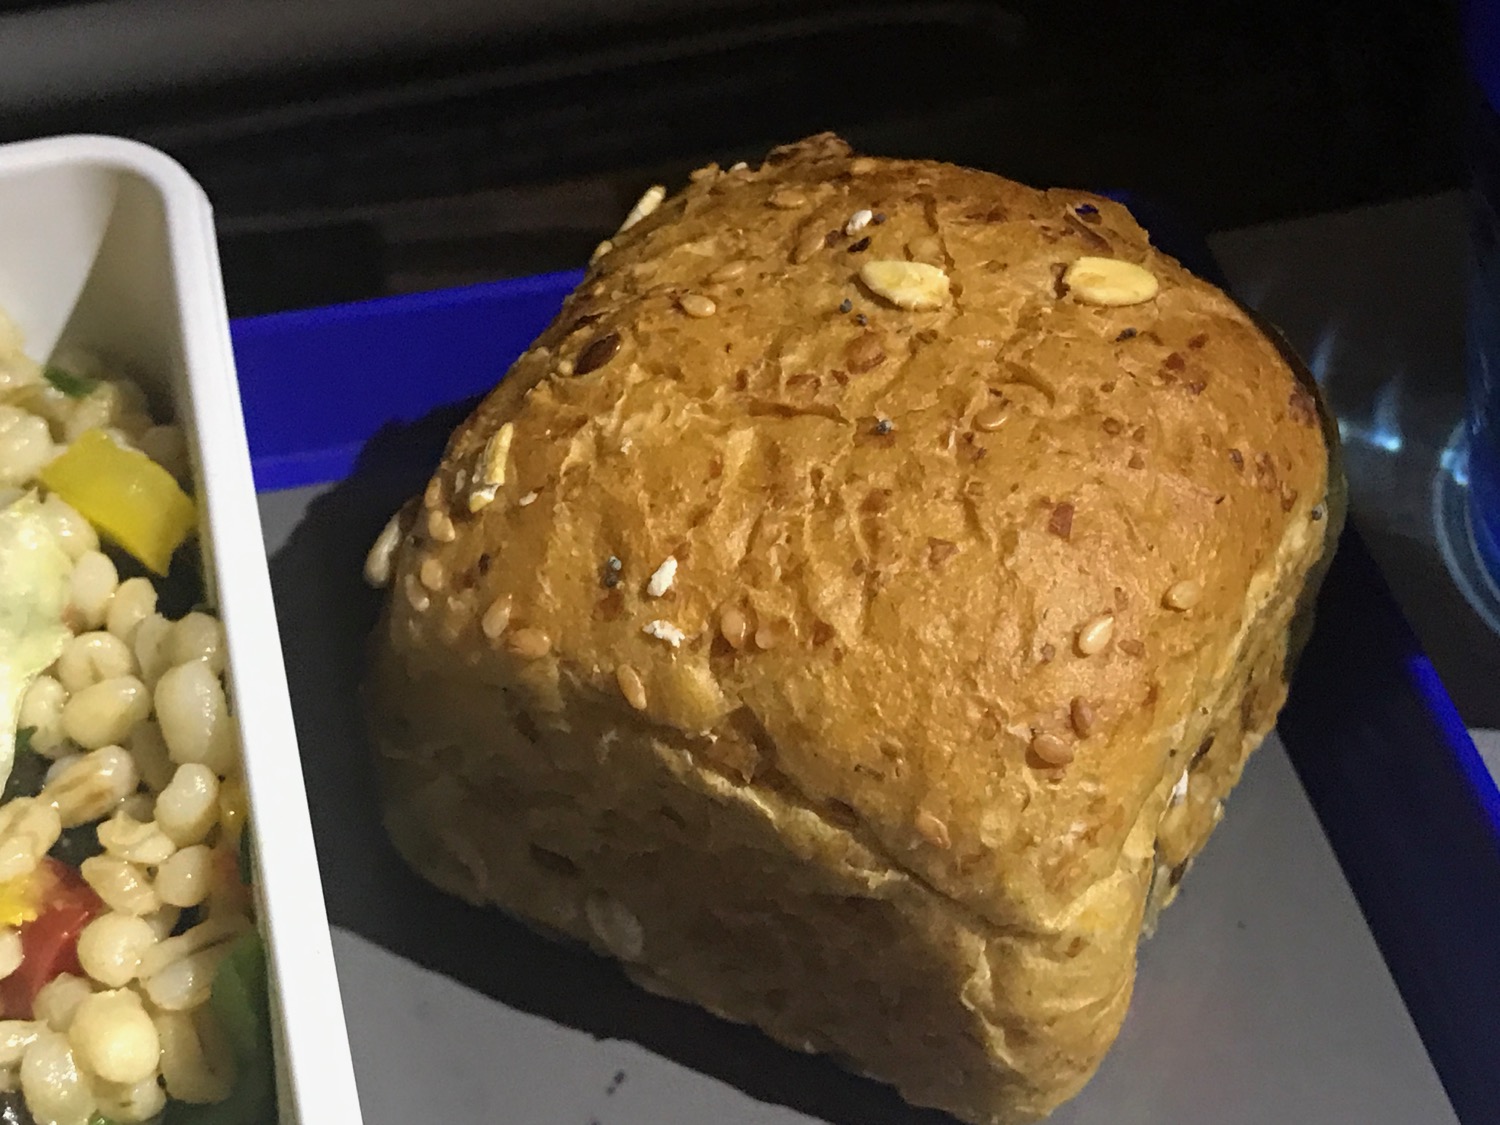 a close up of a bread